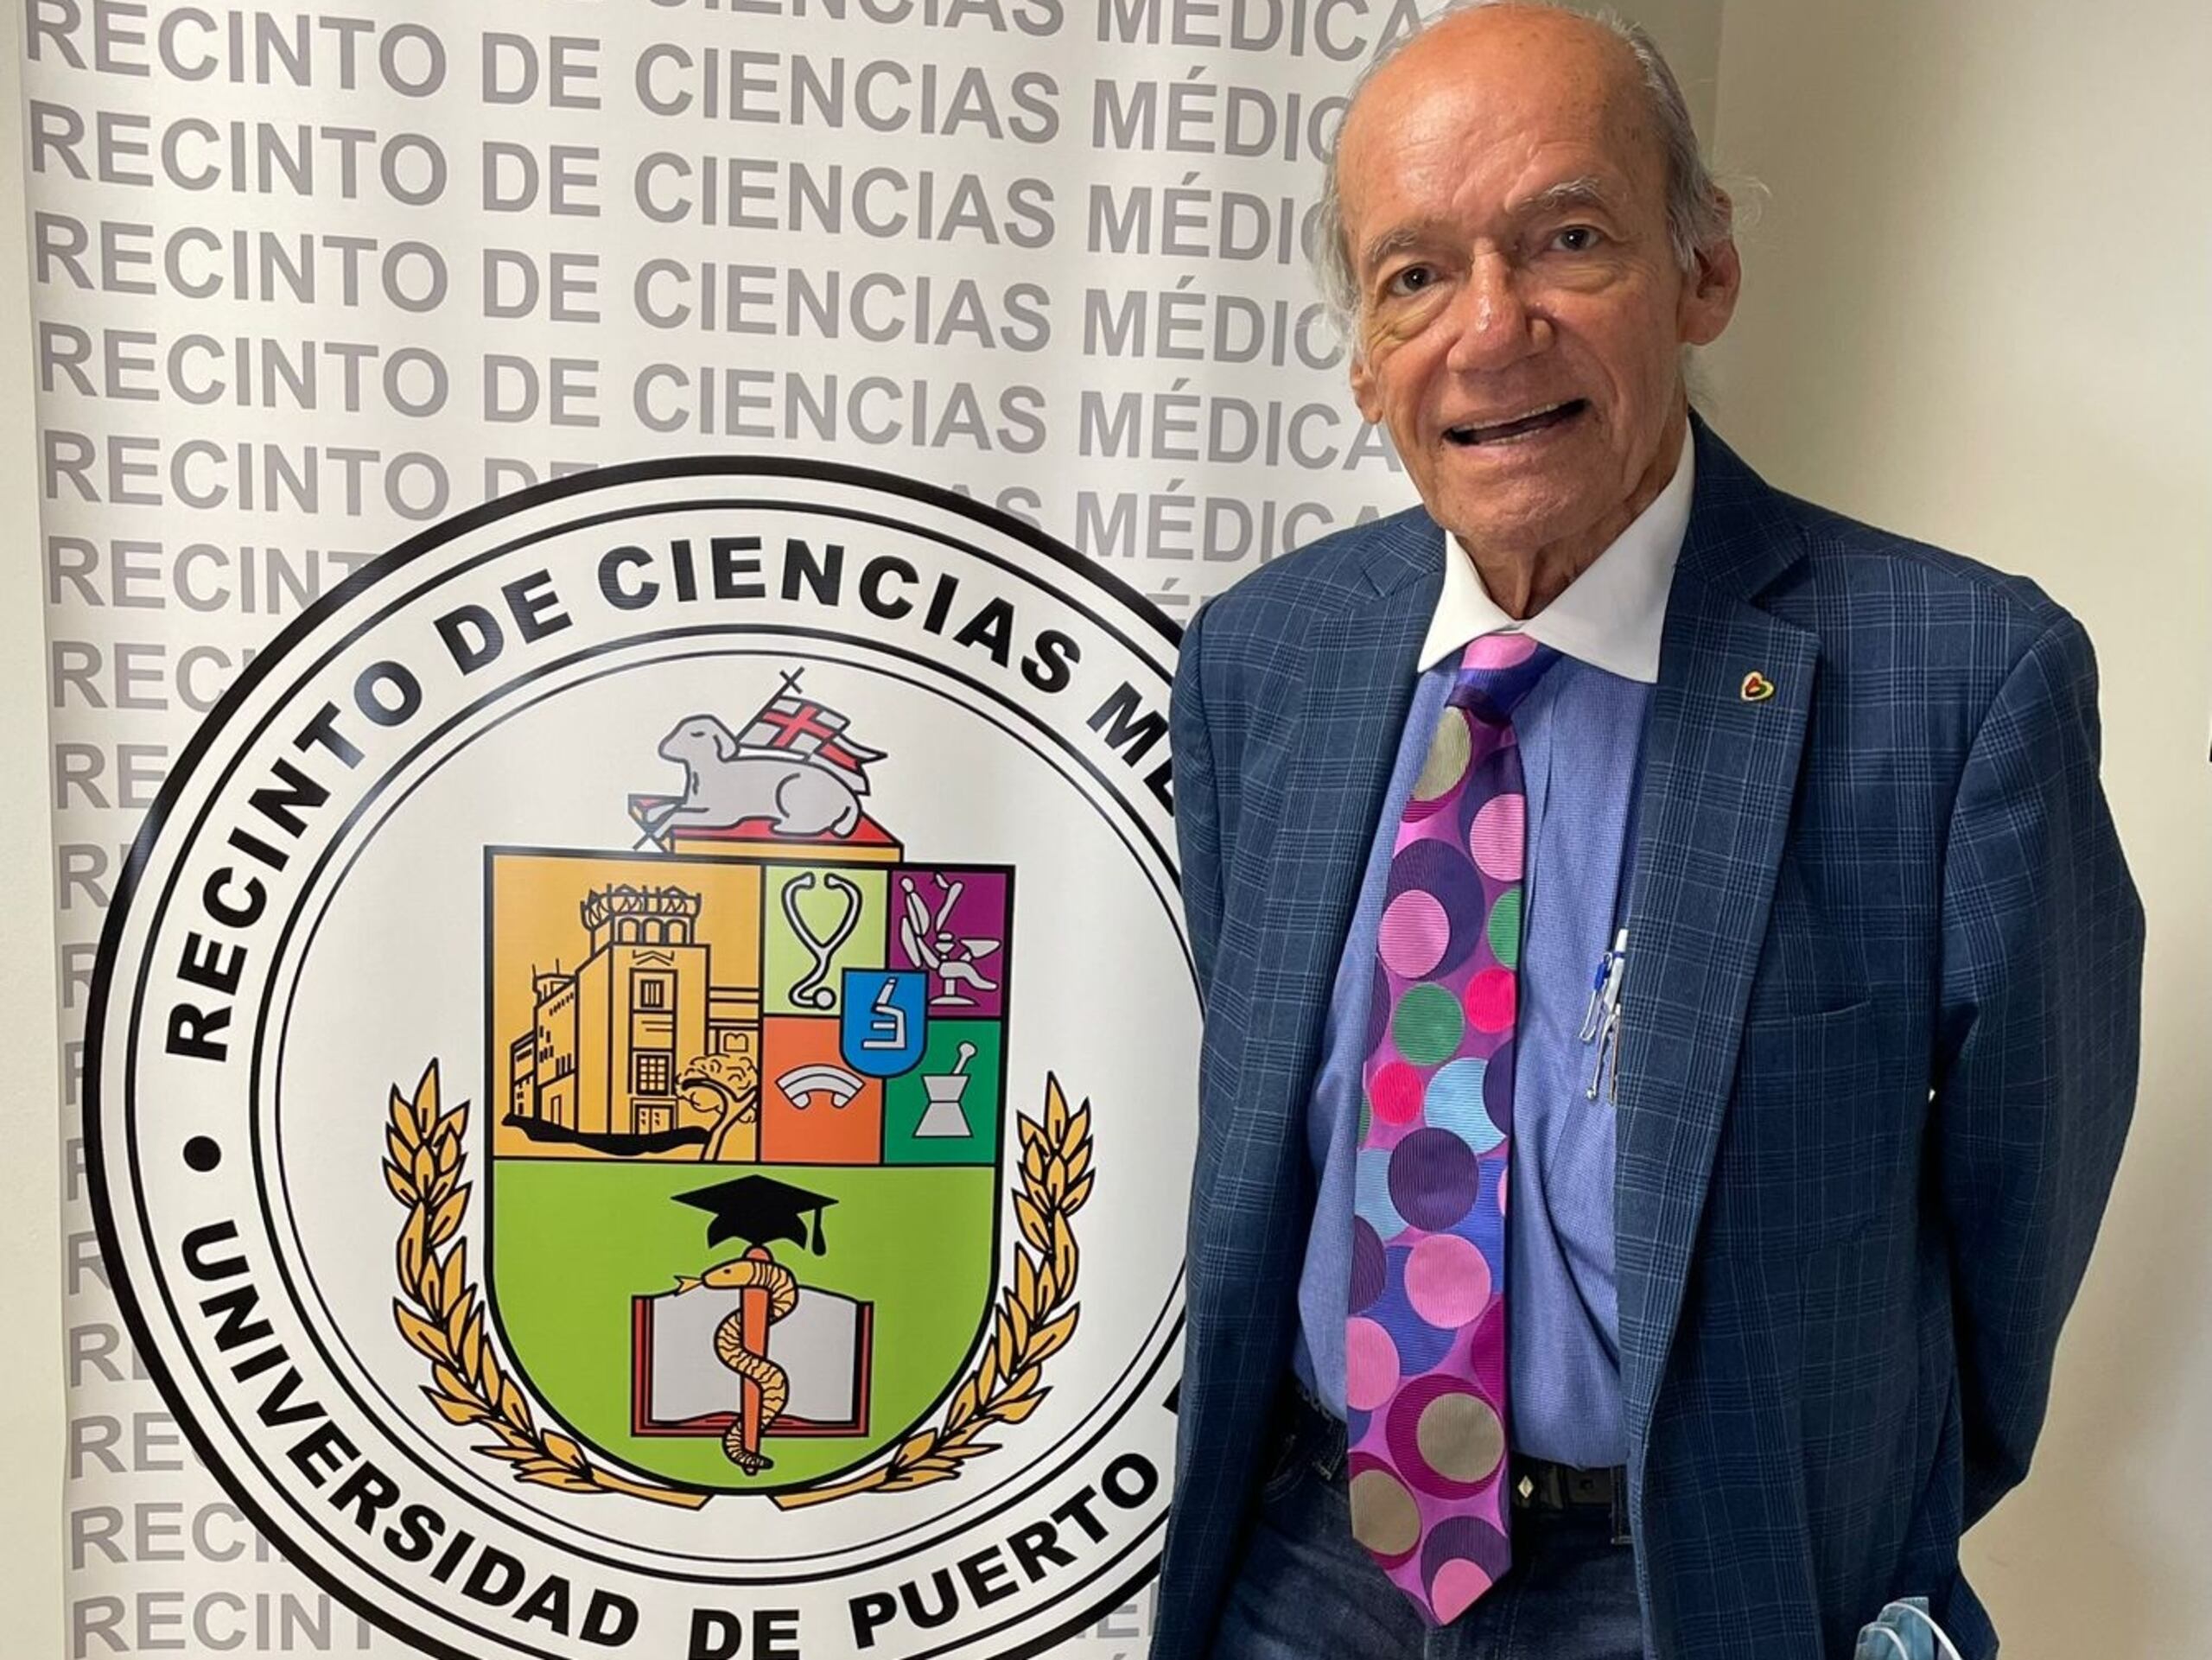 El doctor Dr. Pablo I. Altieri, quien se ha desempeñado como cardiólogo por más de 50 años, encabeza el grupo de científicos boricuas.